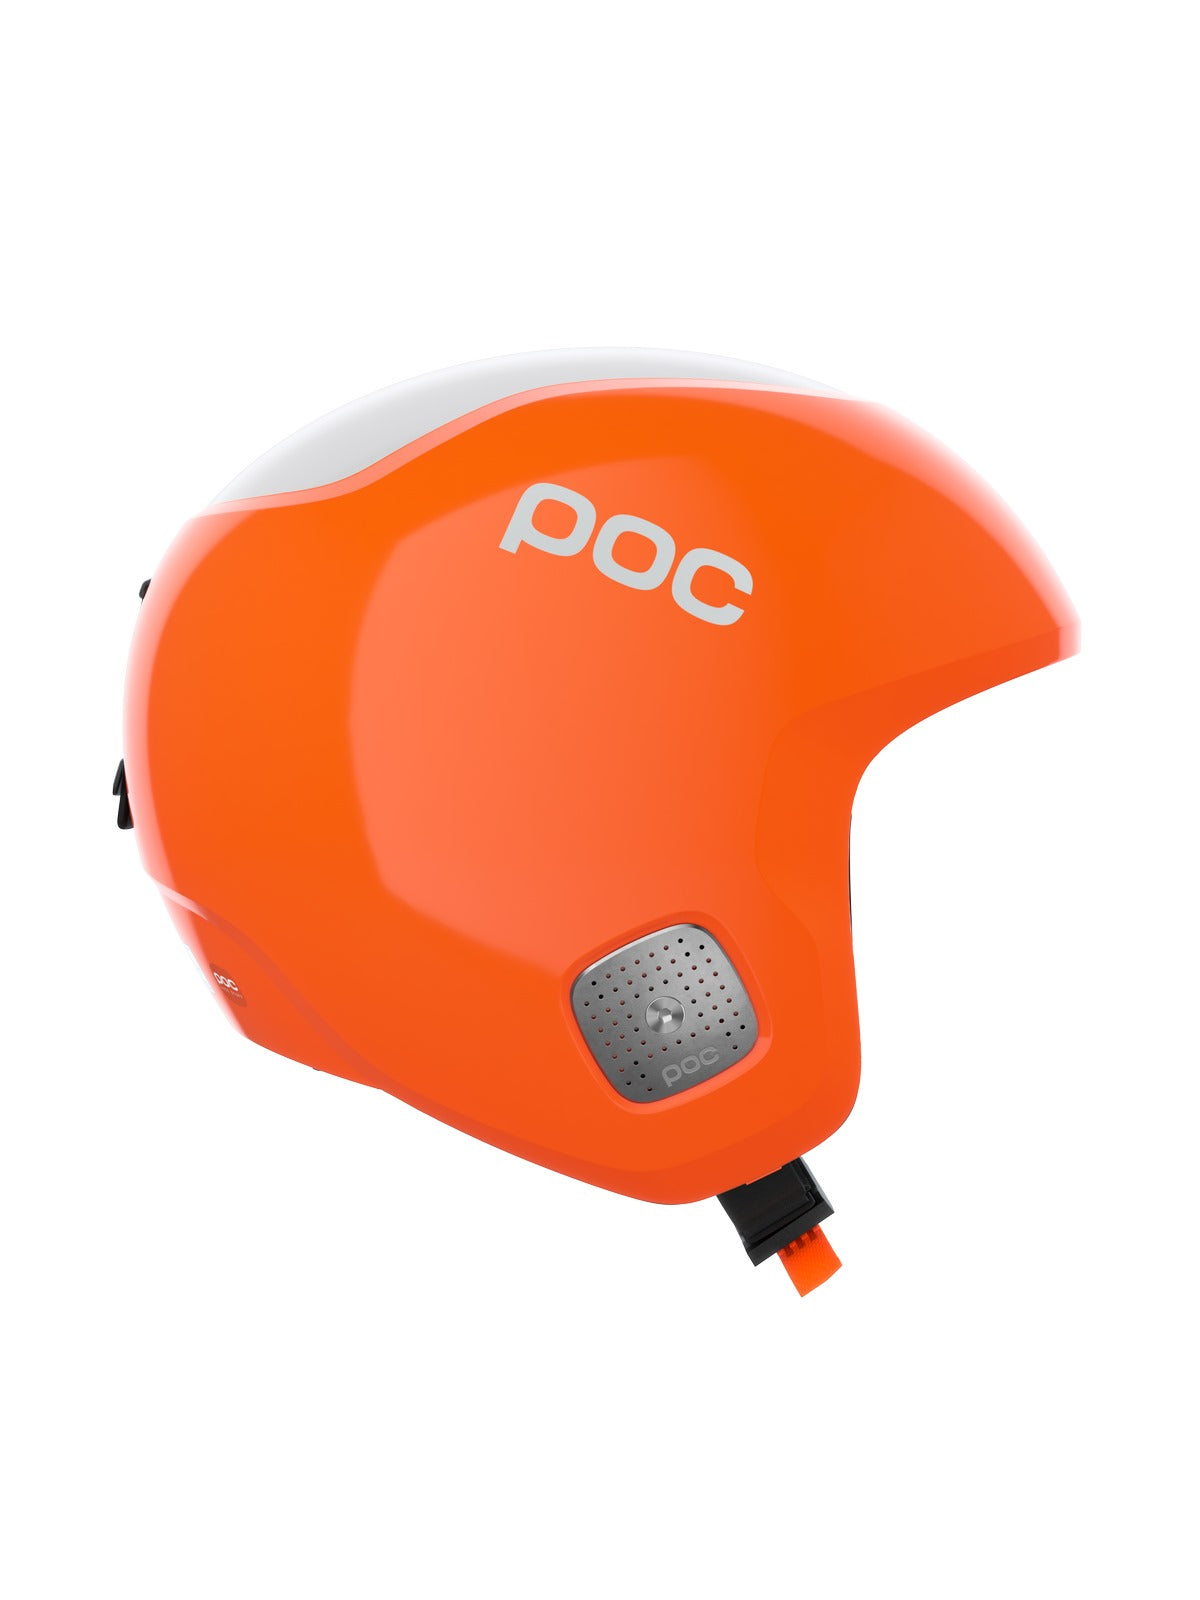 Kask narciarski POC Skull Dura Comp MIPS - Fluo. Orange